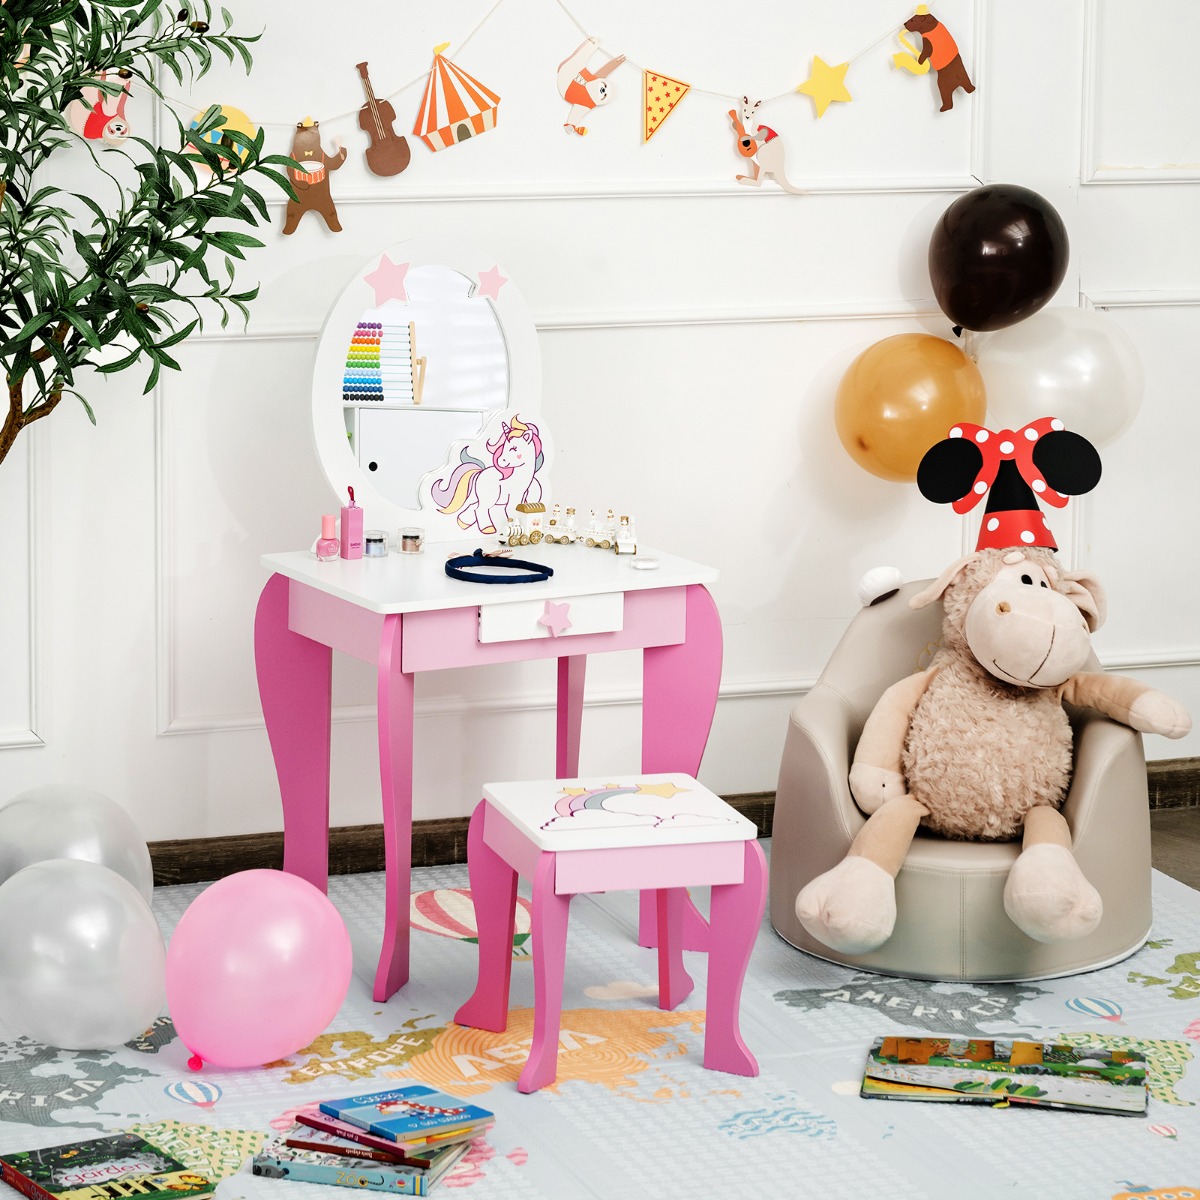 Houten Kinderkaptafel met Krukje & Uitneembare Spiegel & Lade Roze